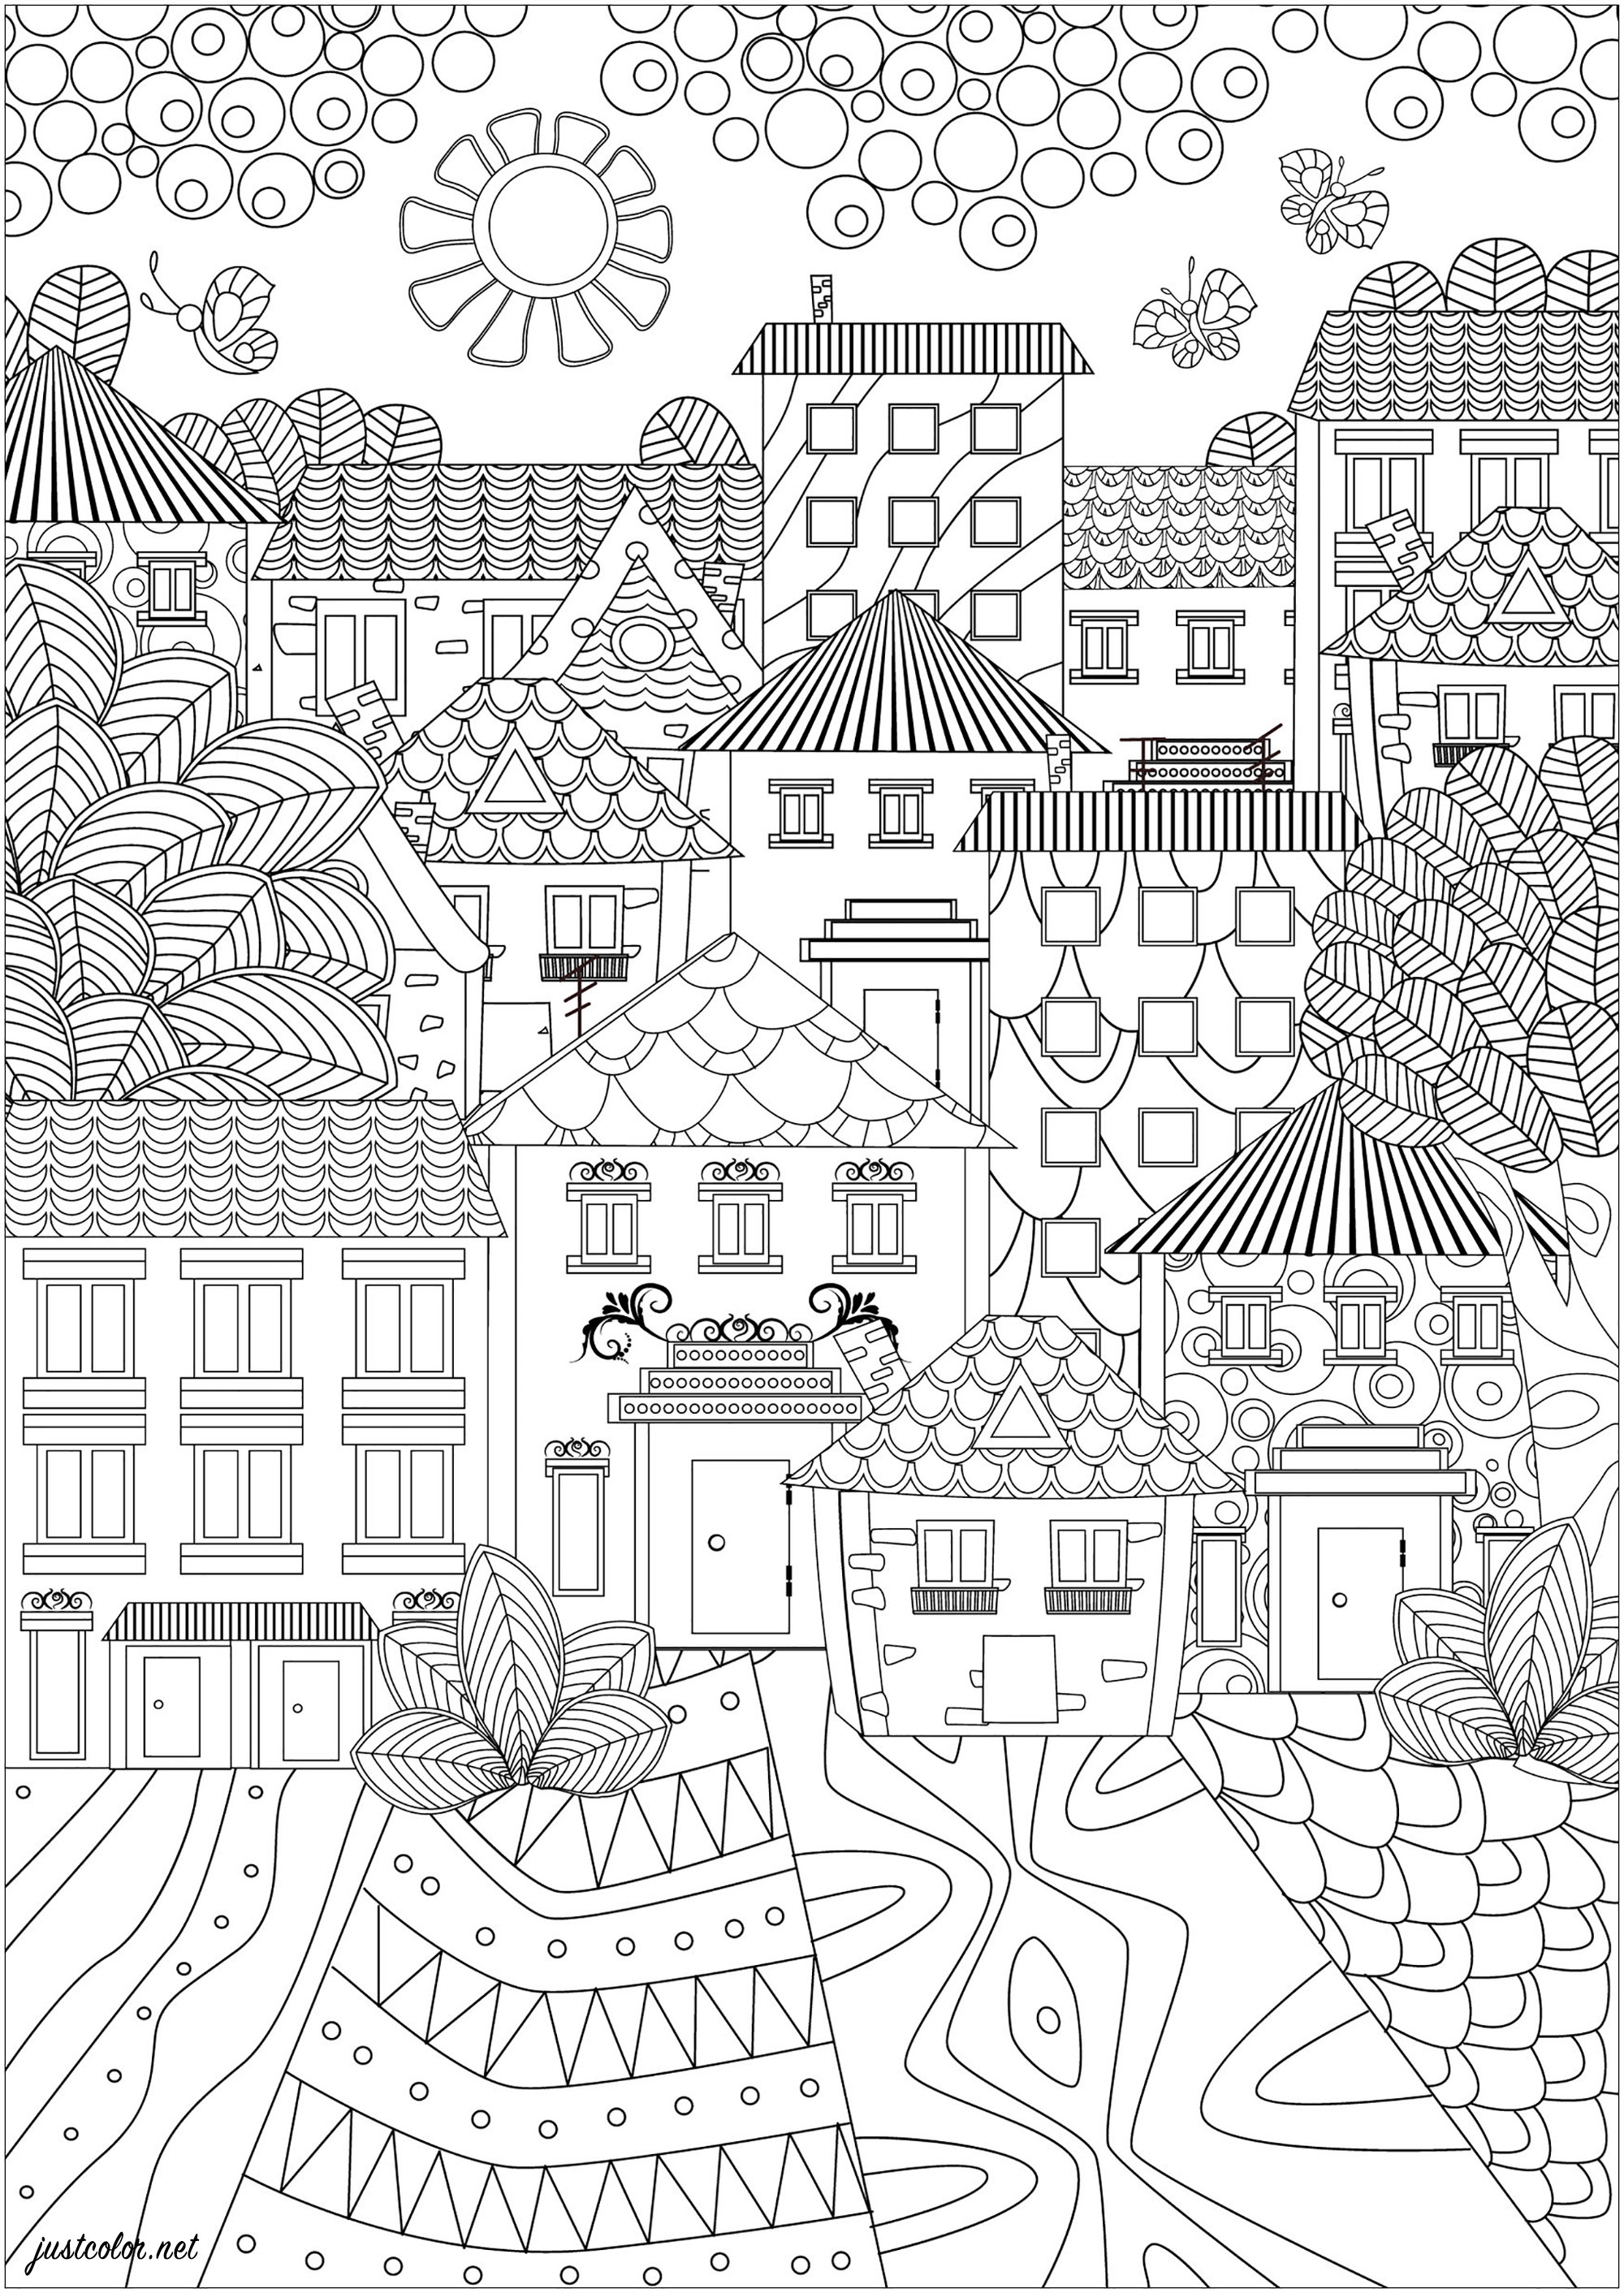 Uma cidade de belas casas com desenhos simples e elegantes. Esta página para colorir é uma paisagem urbana muito simples e elegante. Mostra uma cidade composta por bonitas casas com desenhos simples e elegantes. Os telhados são pontiagudos e as janelas são pequenas e bem decoradas. As ruas são pavimentadas com padrões que serão muito agradáveis de colorir, Fonte : 123rf   Artista : Ksym